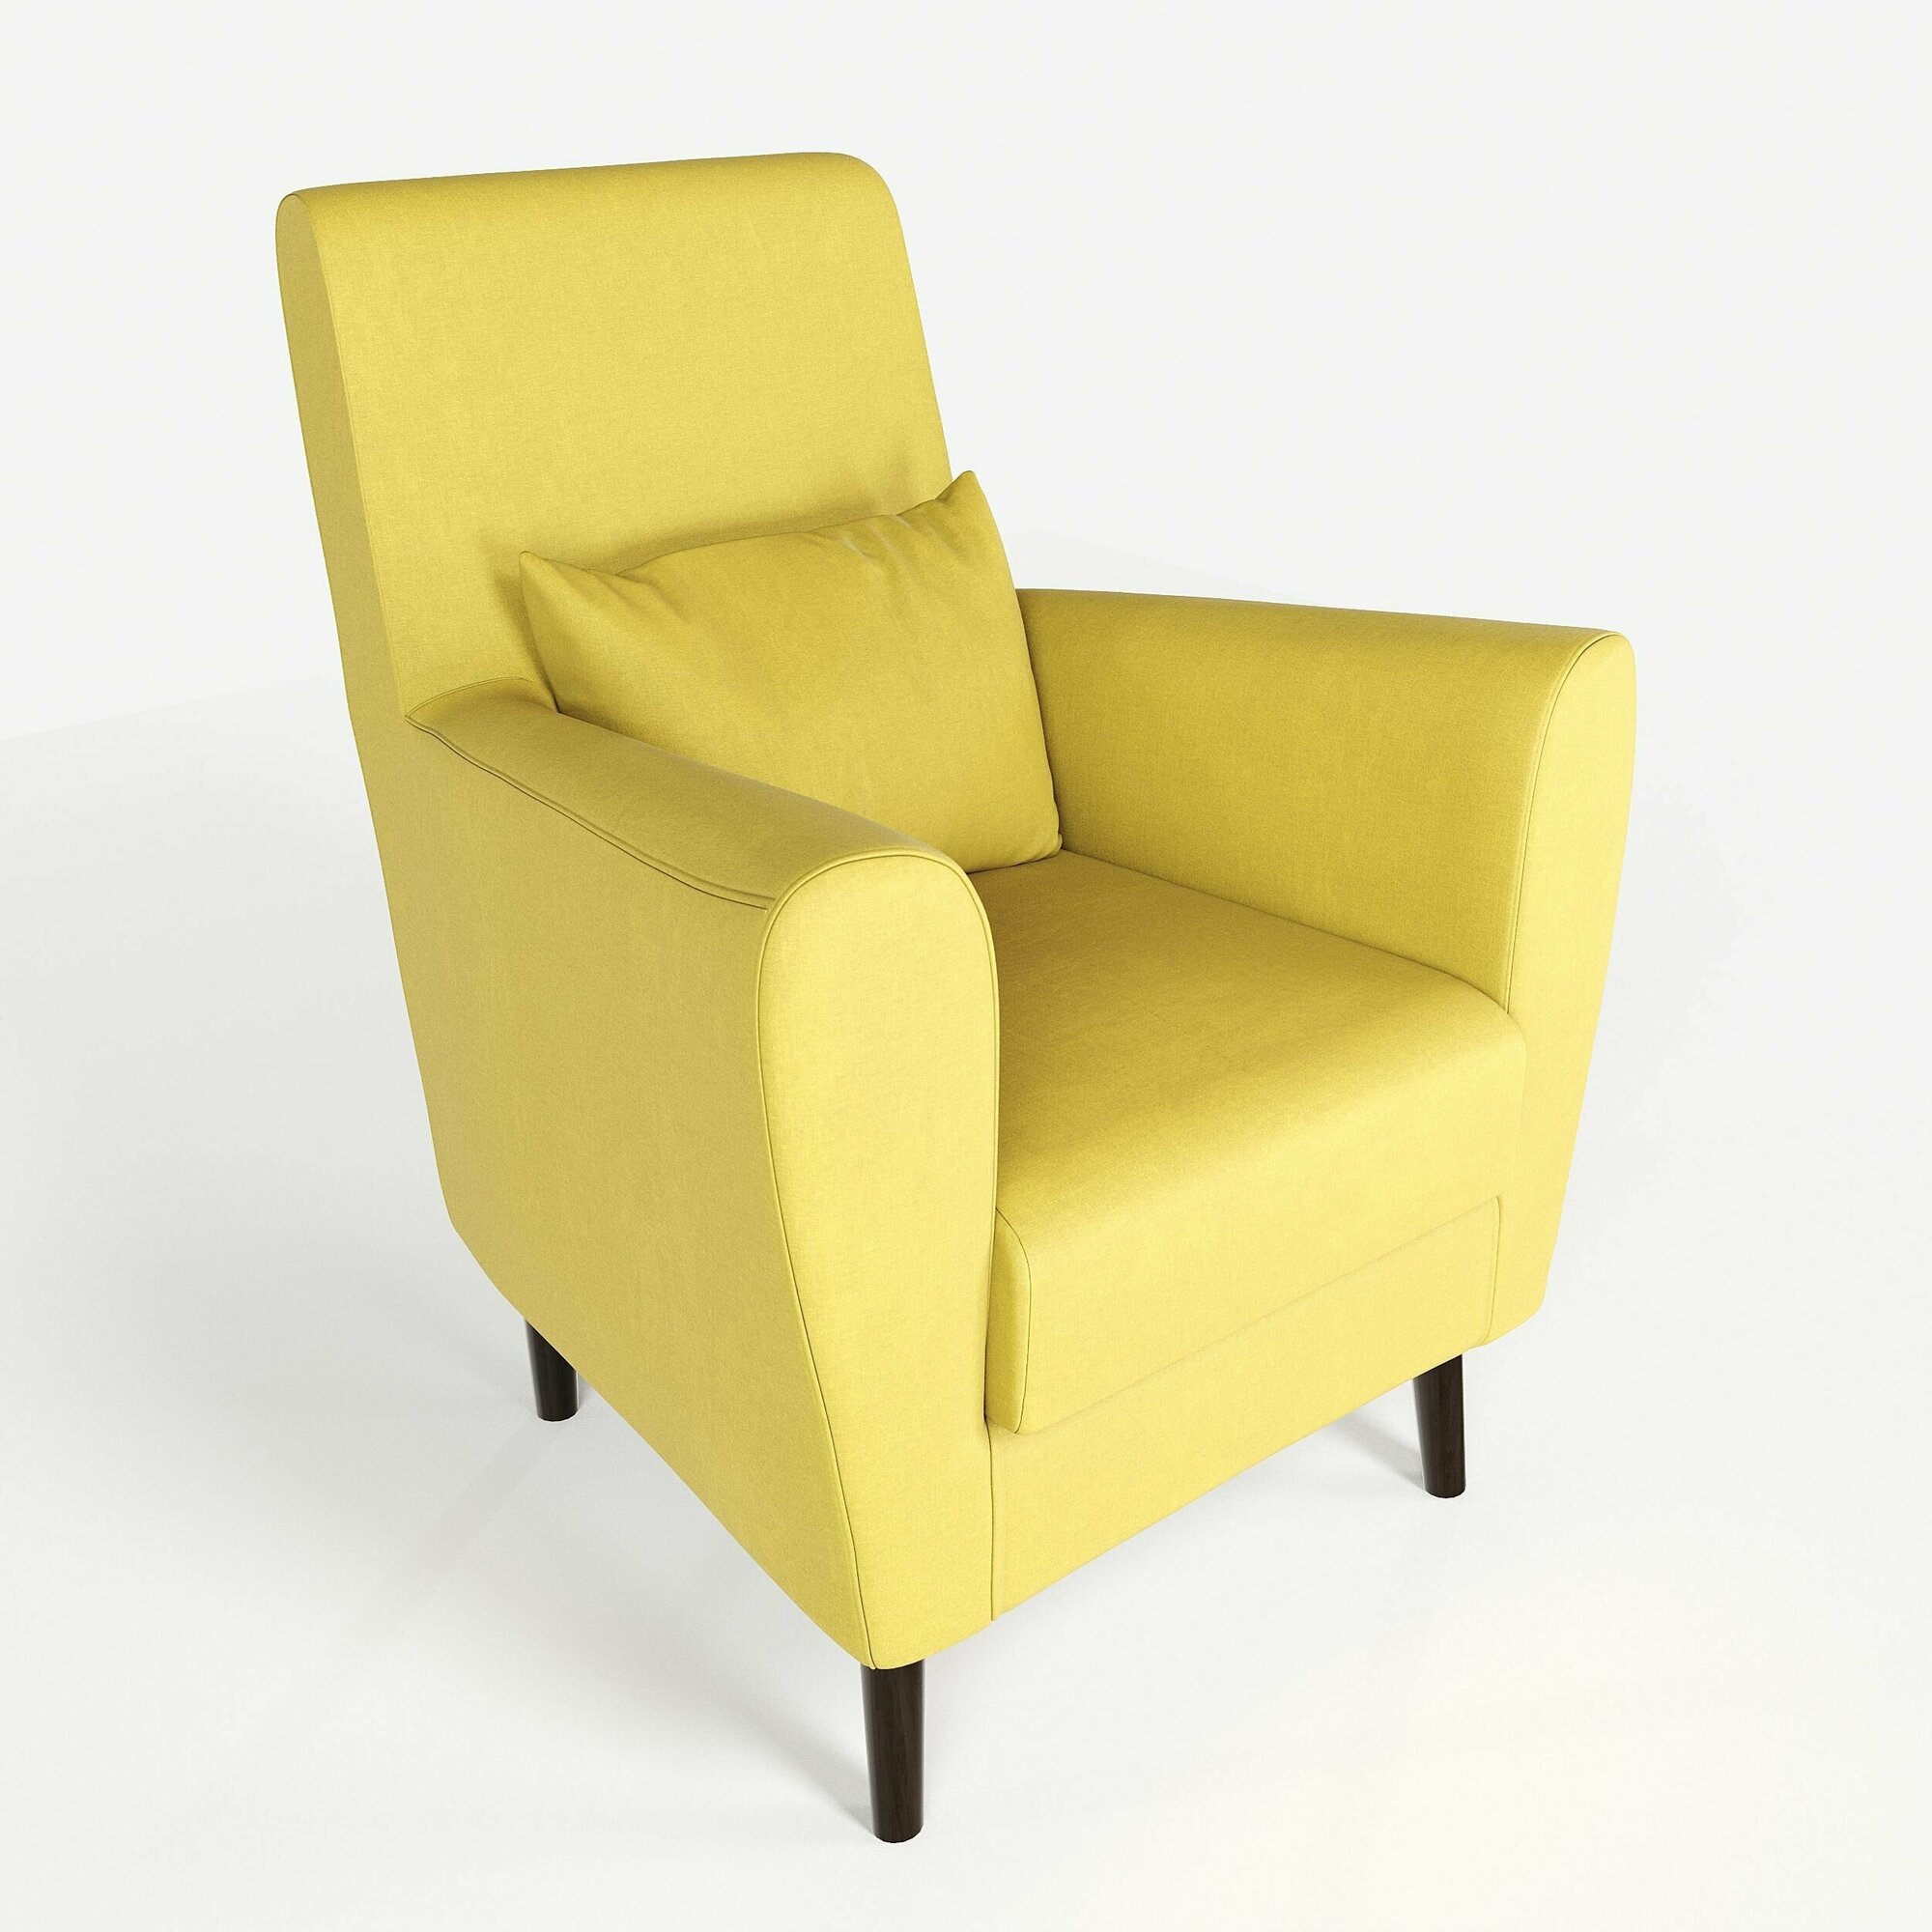 Кресло мягкое Грэйс D-6 (желтый) на высоких ножках с подлокотниками в гостиную, офис, зону ожидания, салон красоты.